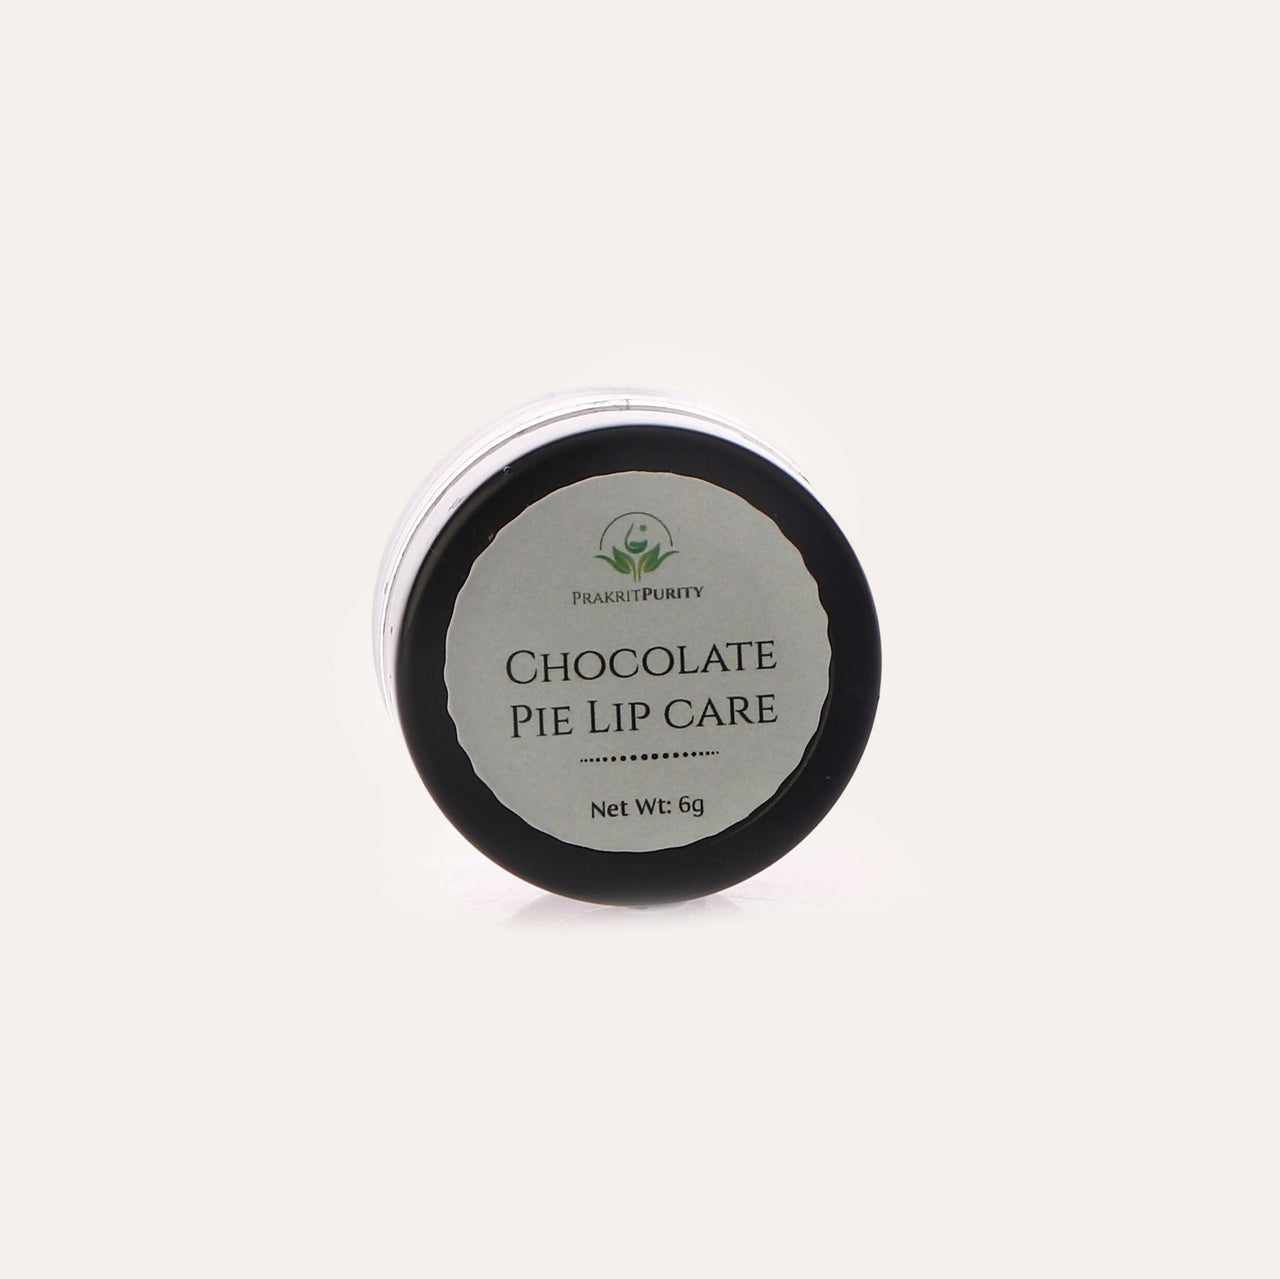 PrakritPurity Chocolate Pie Lip Care - Distacart